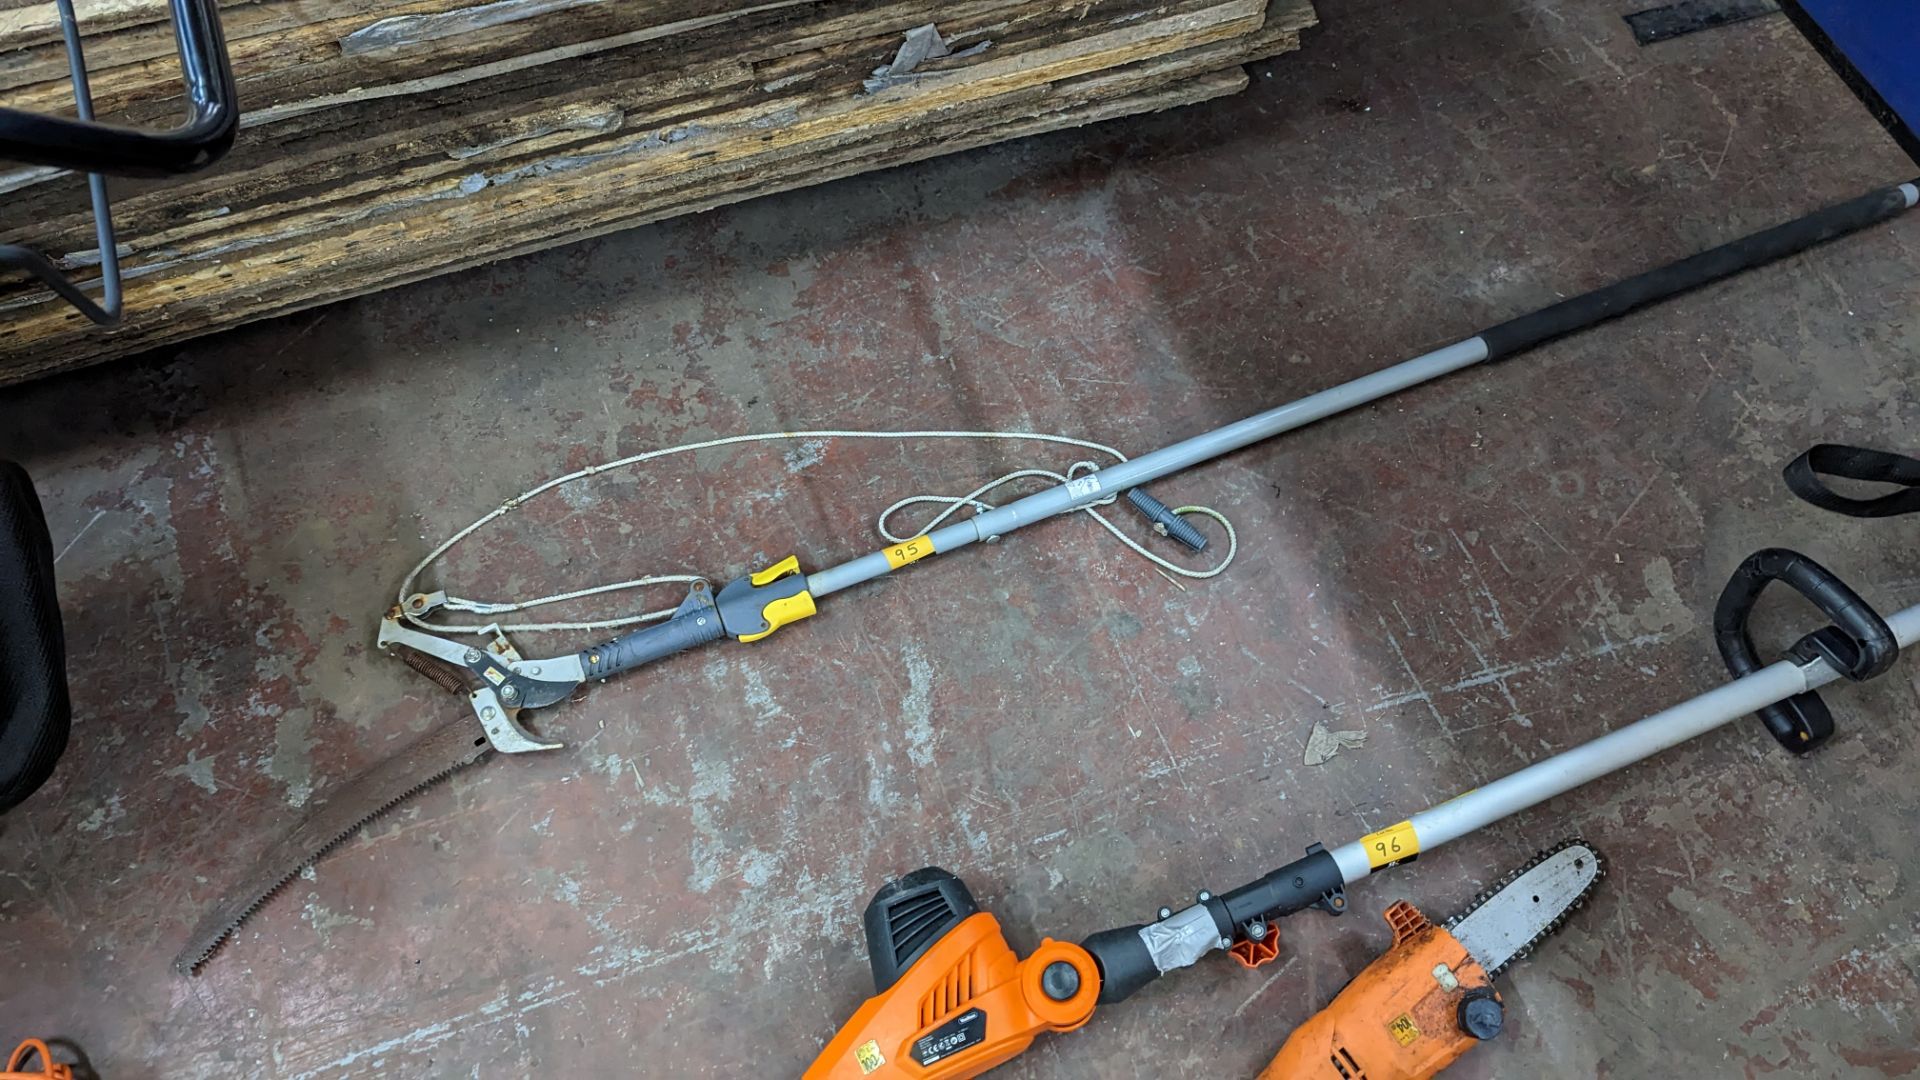 Long handled garden cutting implement